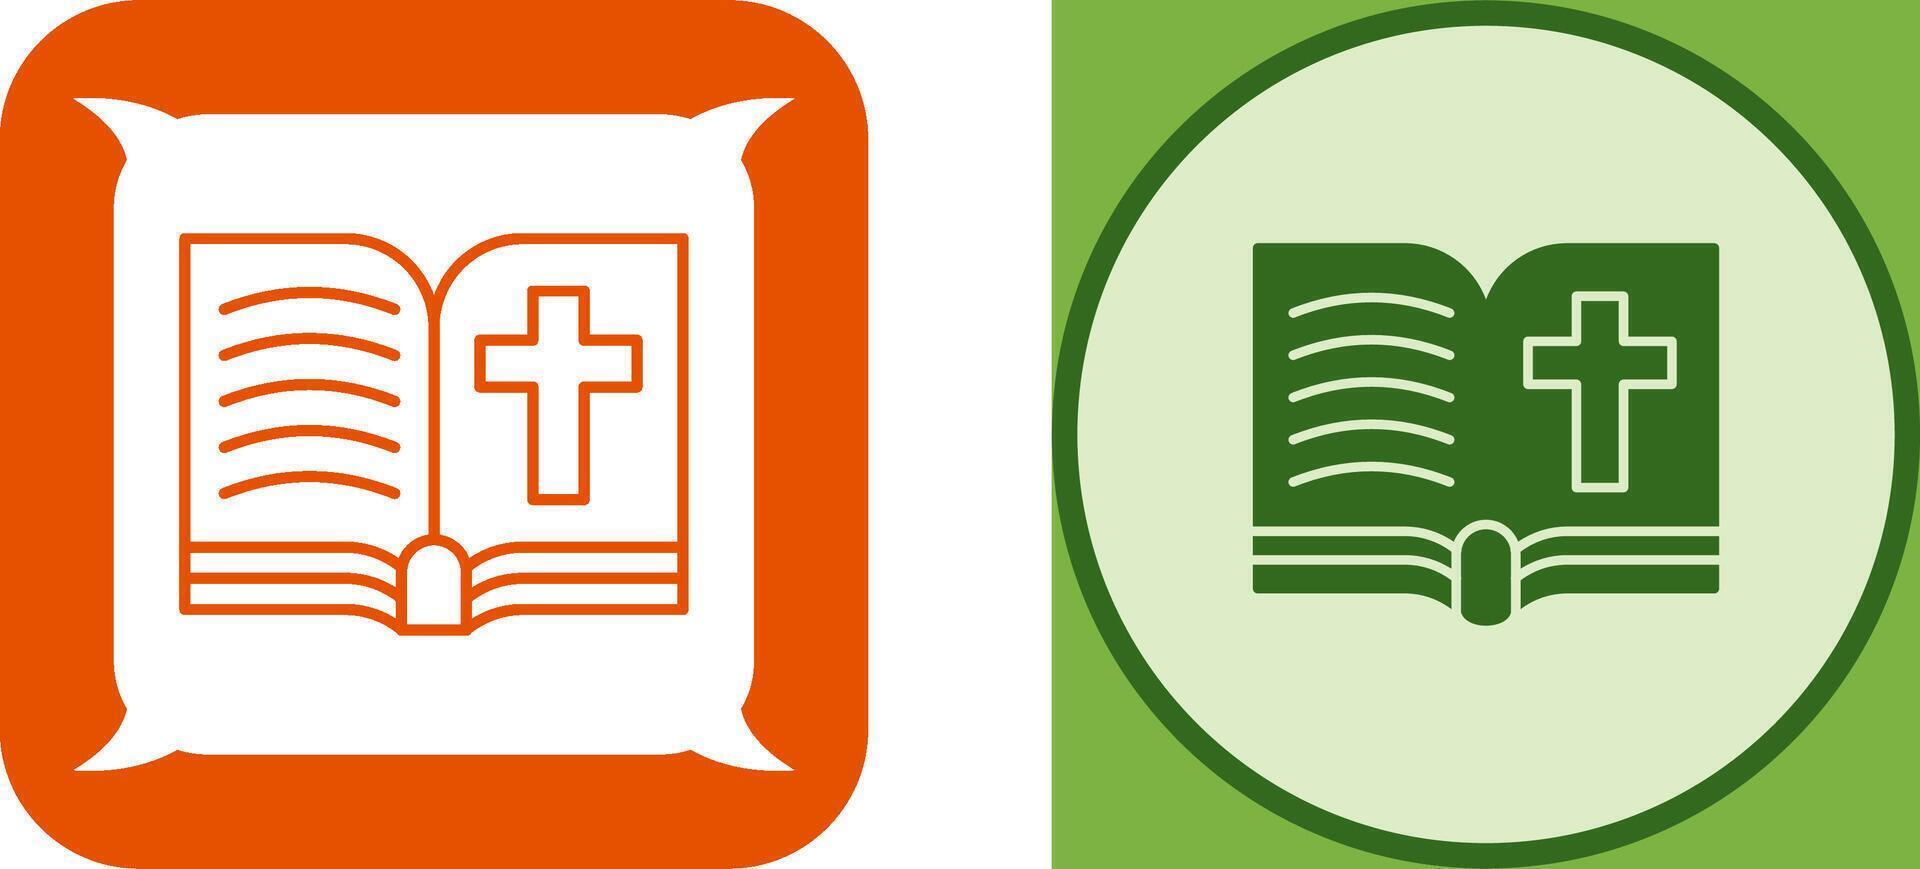 bible Icon Design vector